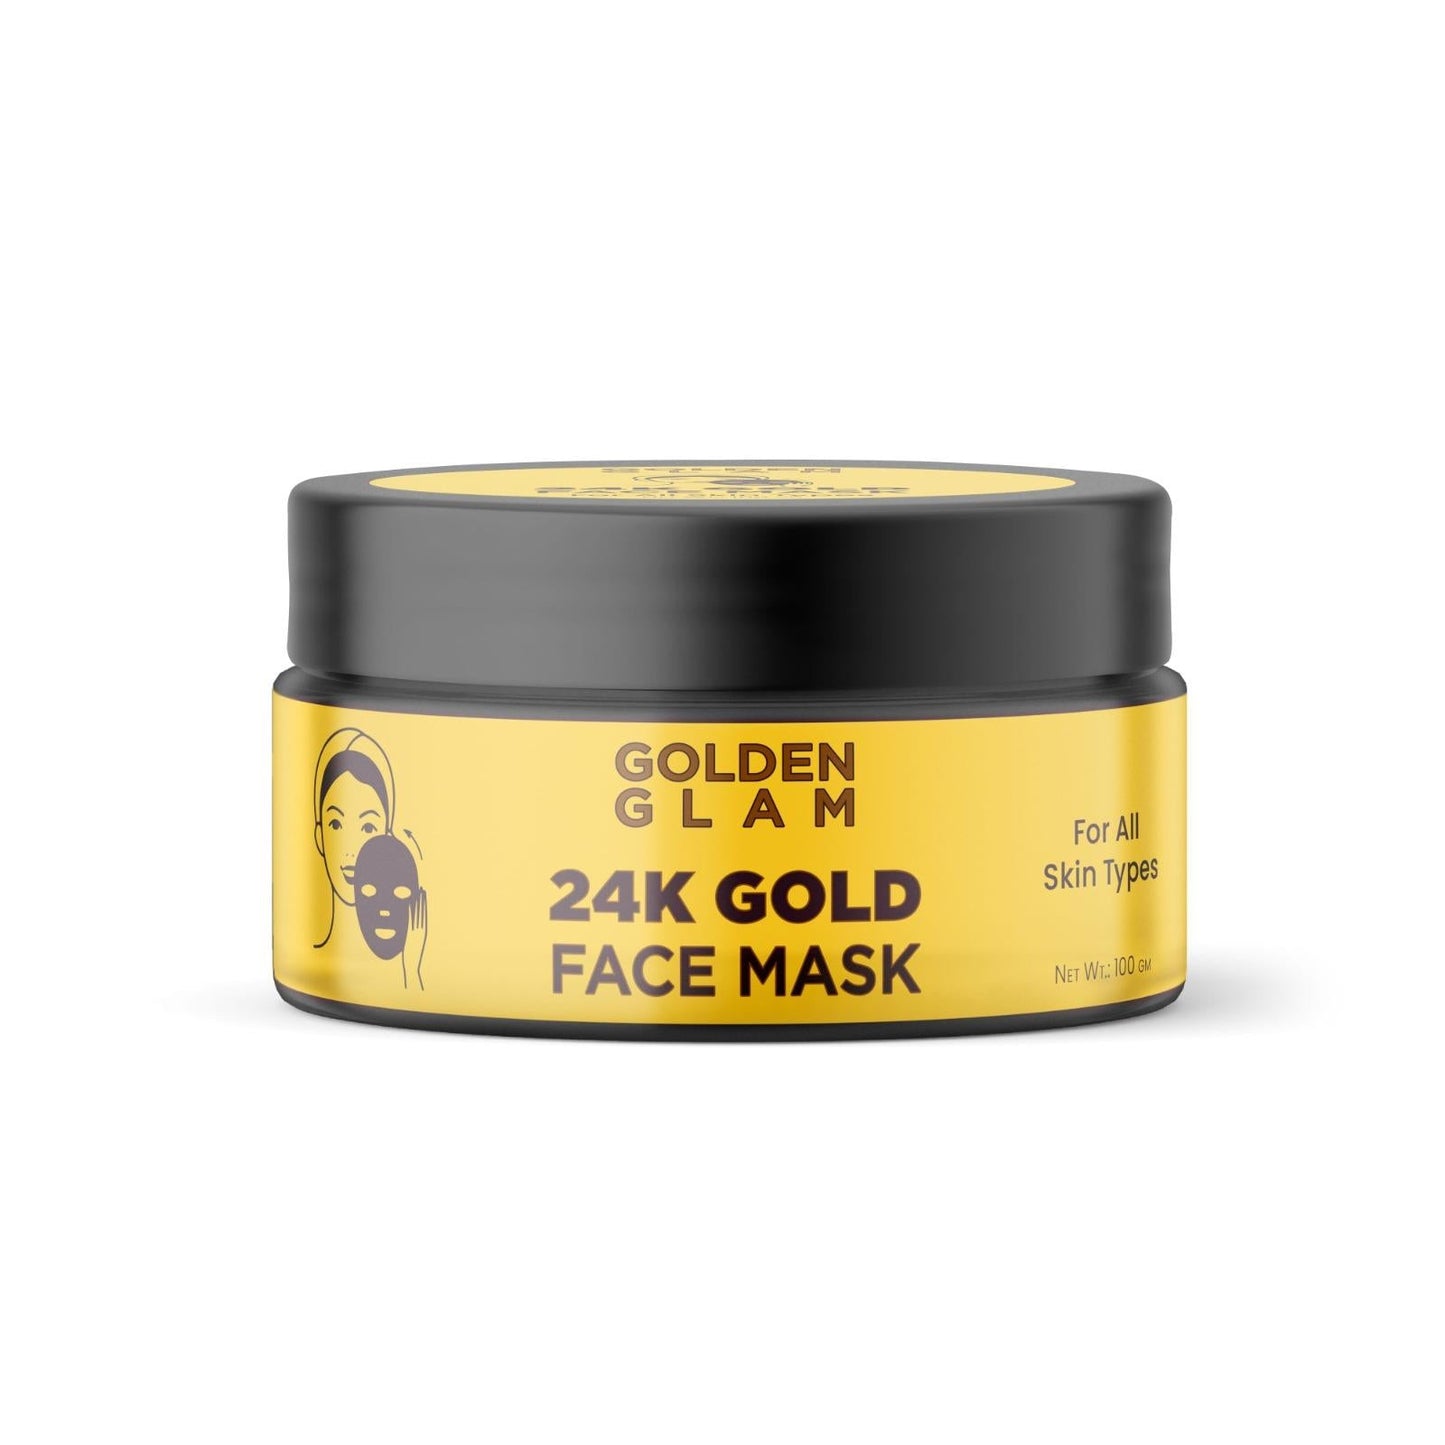 Golden Galm 24K Gold Face Mask - 100g - Deal IND.